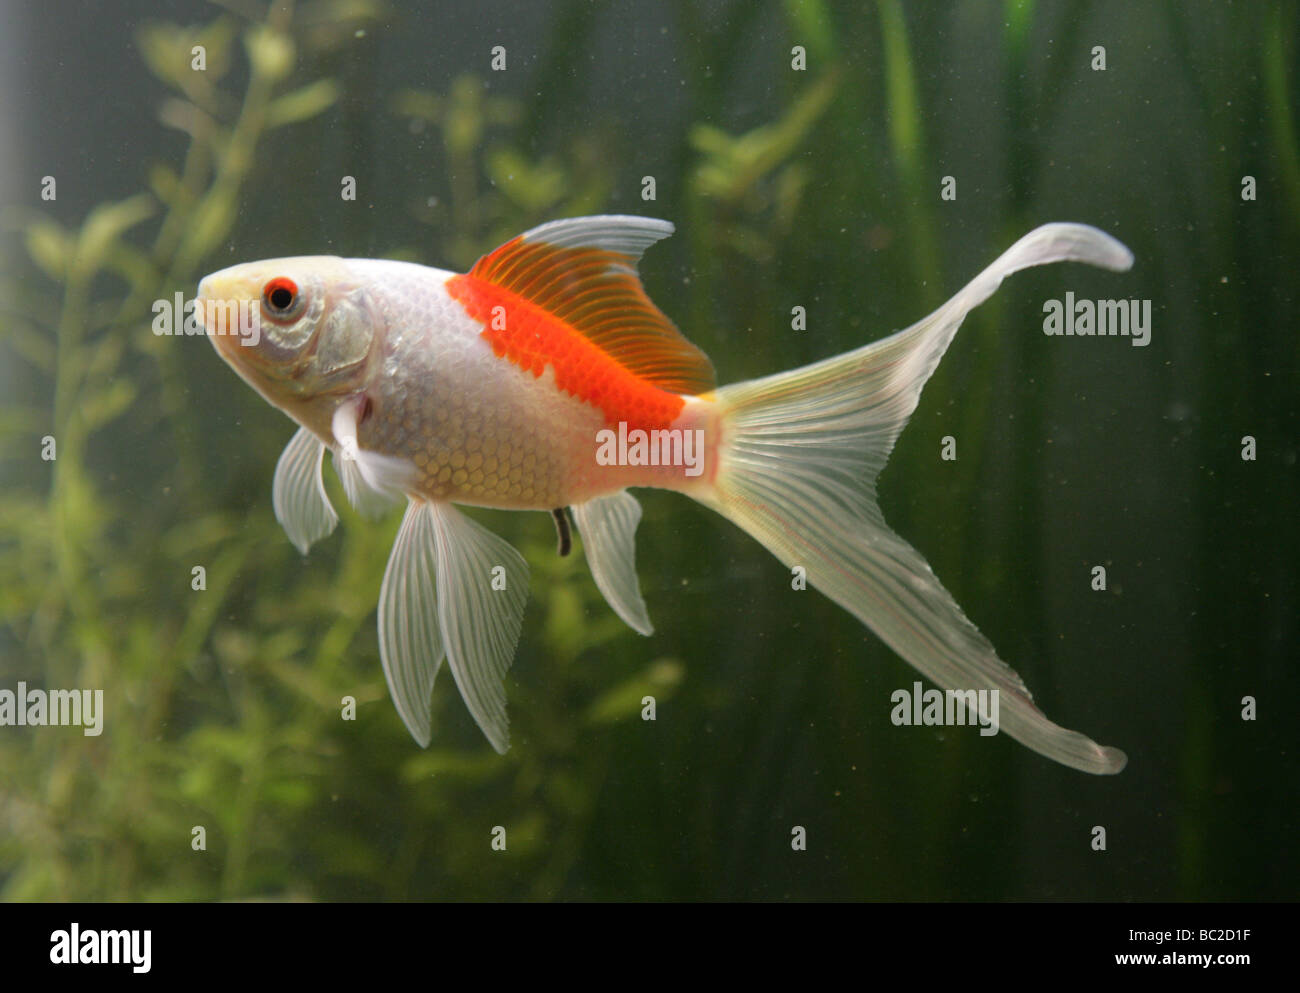 Saras goldfish comet fishtank portrait Banque D'Images